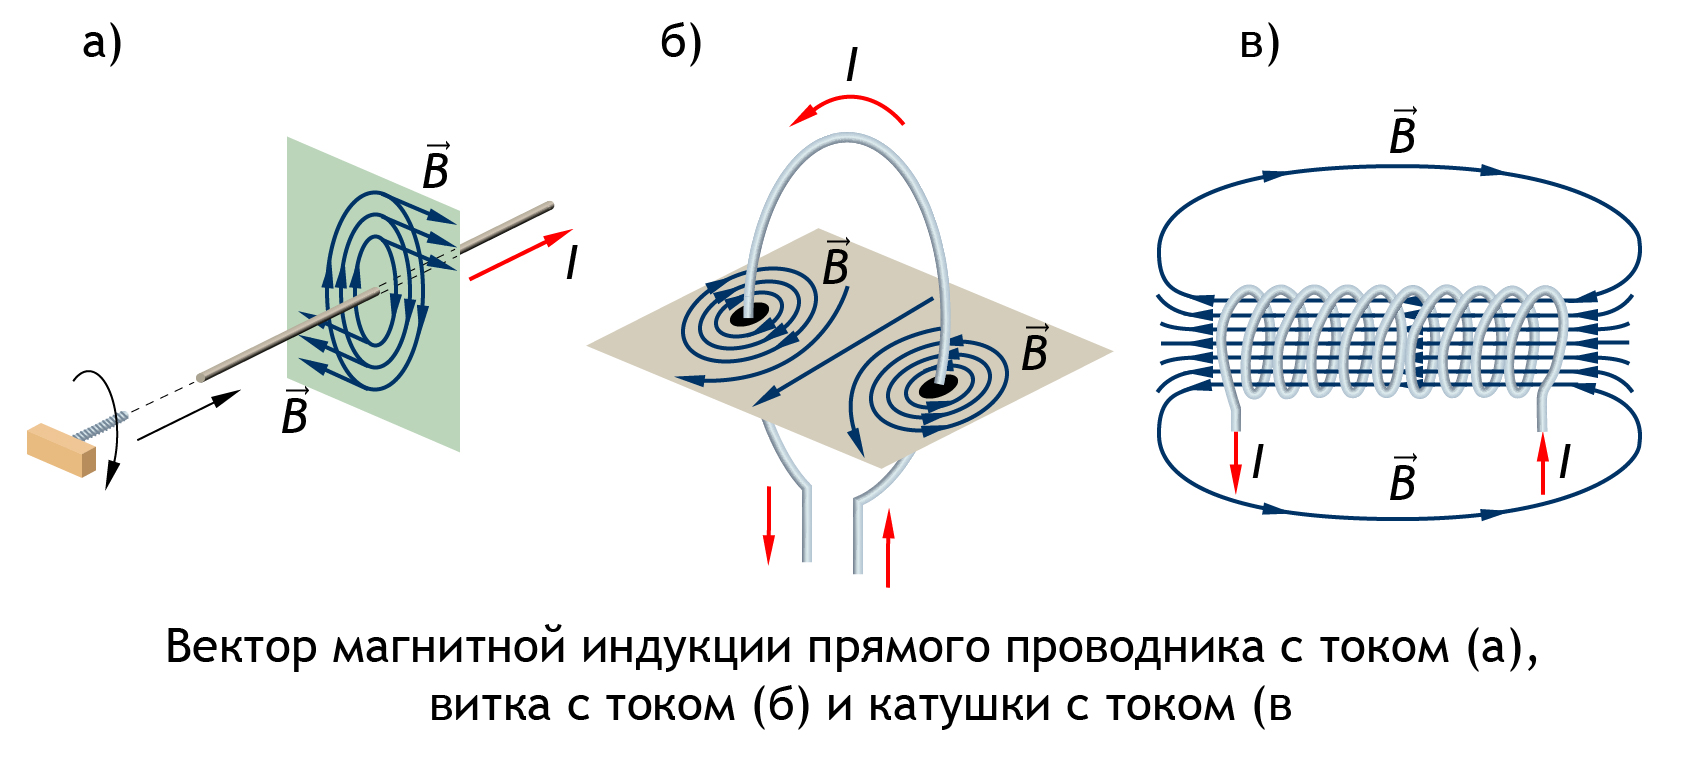 Вектор магнитного поля прямого проводника. Вектор магнитной индукции прямого проводника. Линии магнитной индукции прямого проводника. Силовые линии магнитного поля рамки с током.